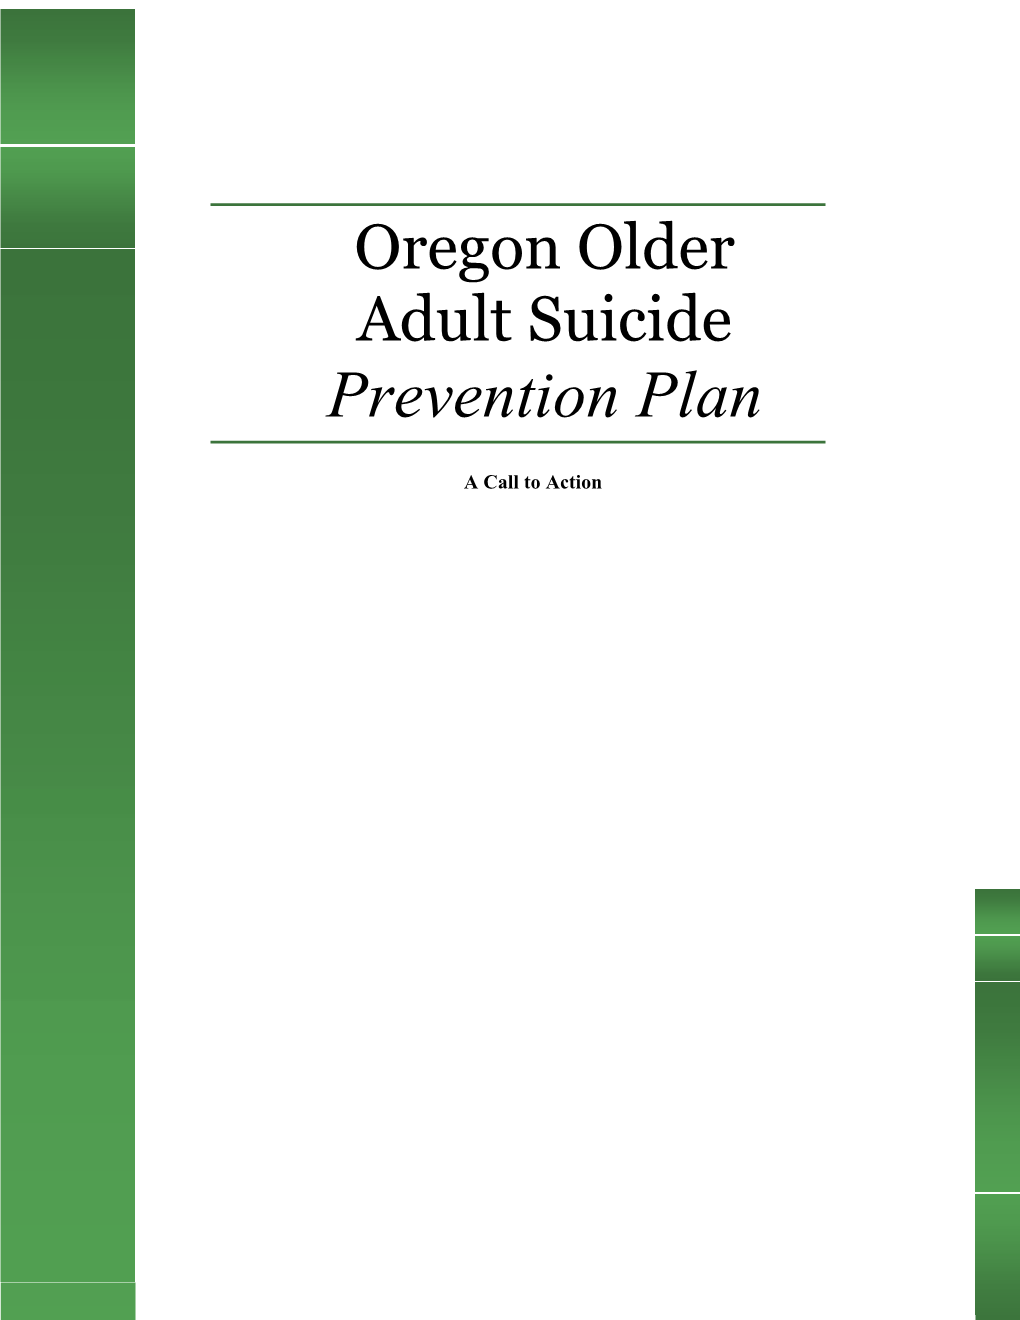 Oregon Older Adult Suicide Prevention Plan